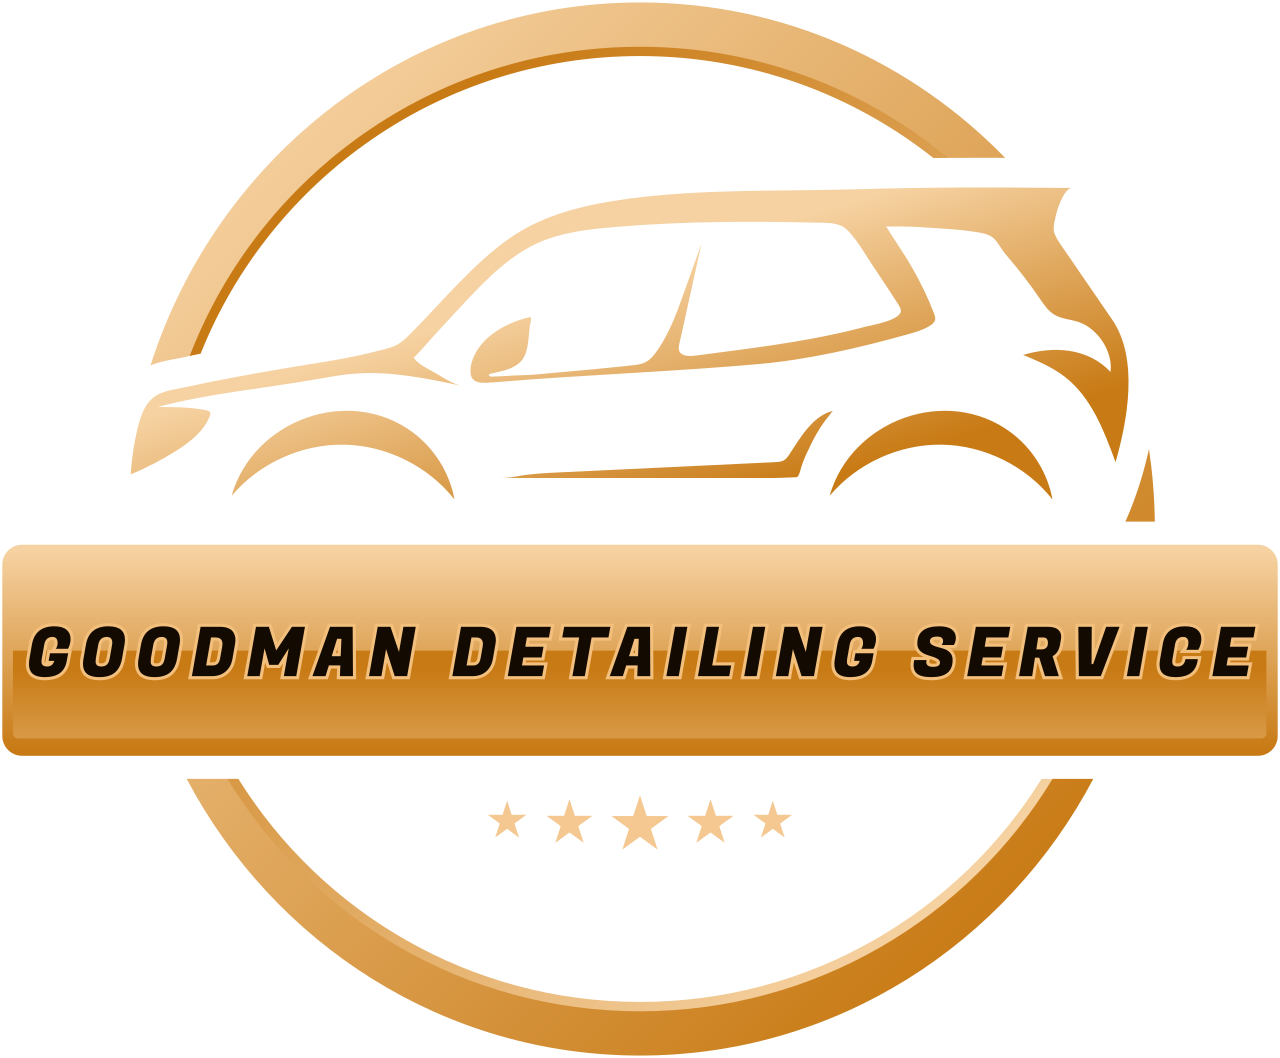 Goodman Detailing Service's logo